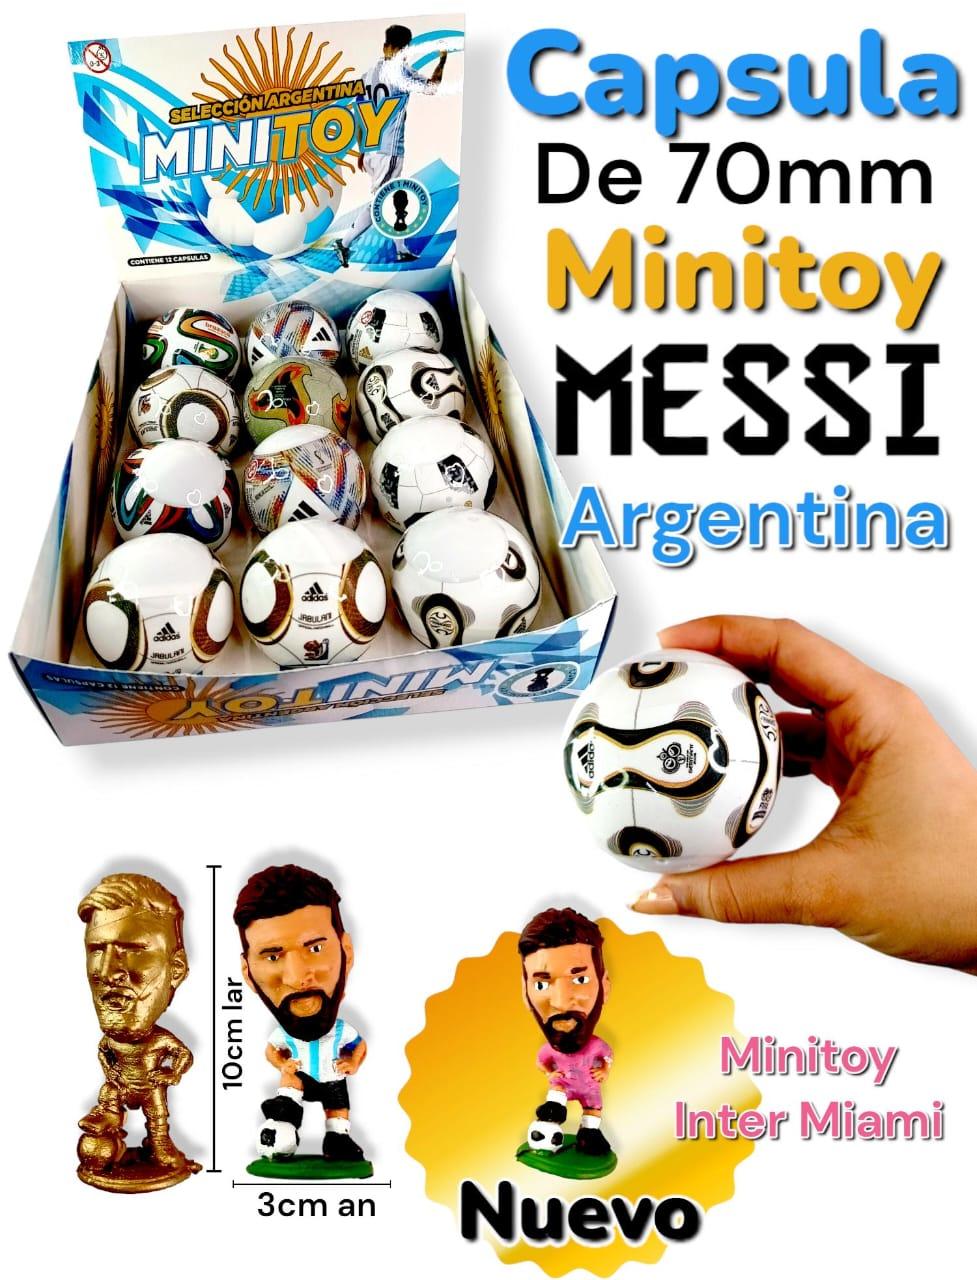 Minitoy MESSI Argentina en capsula de 70mm con exhibidor